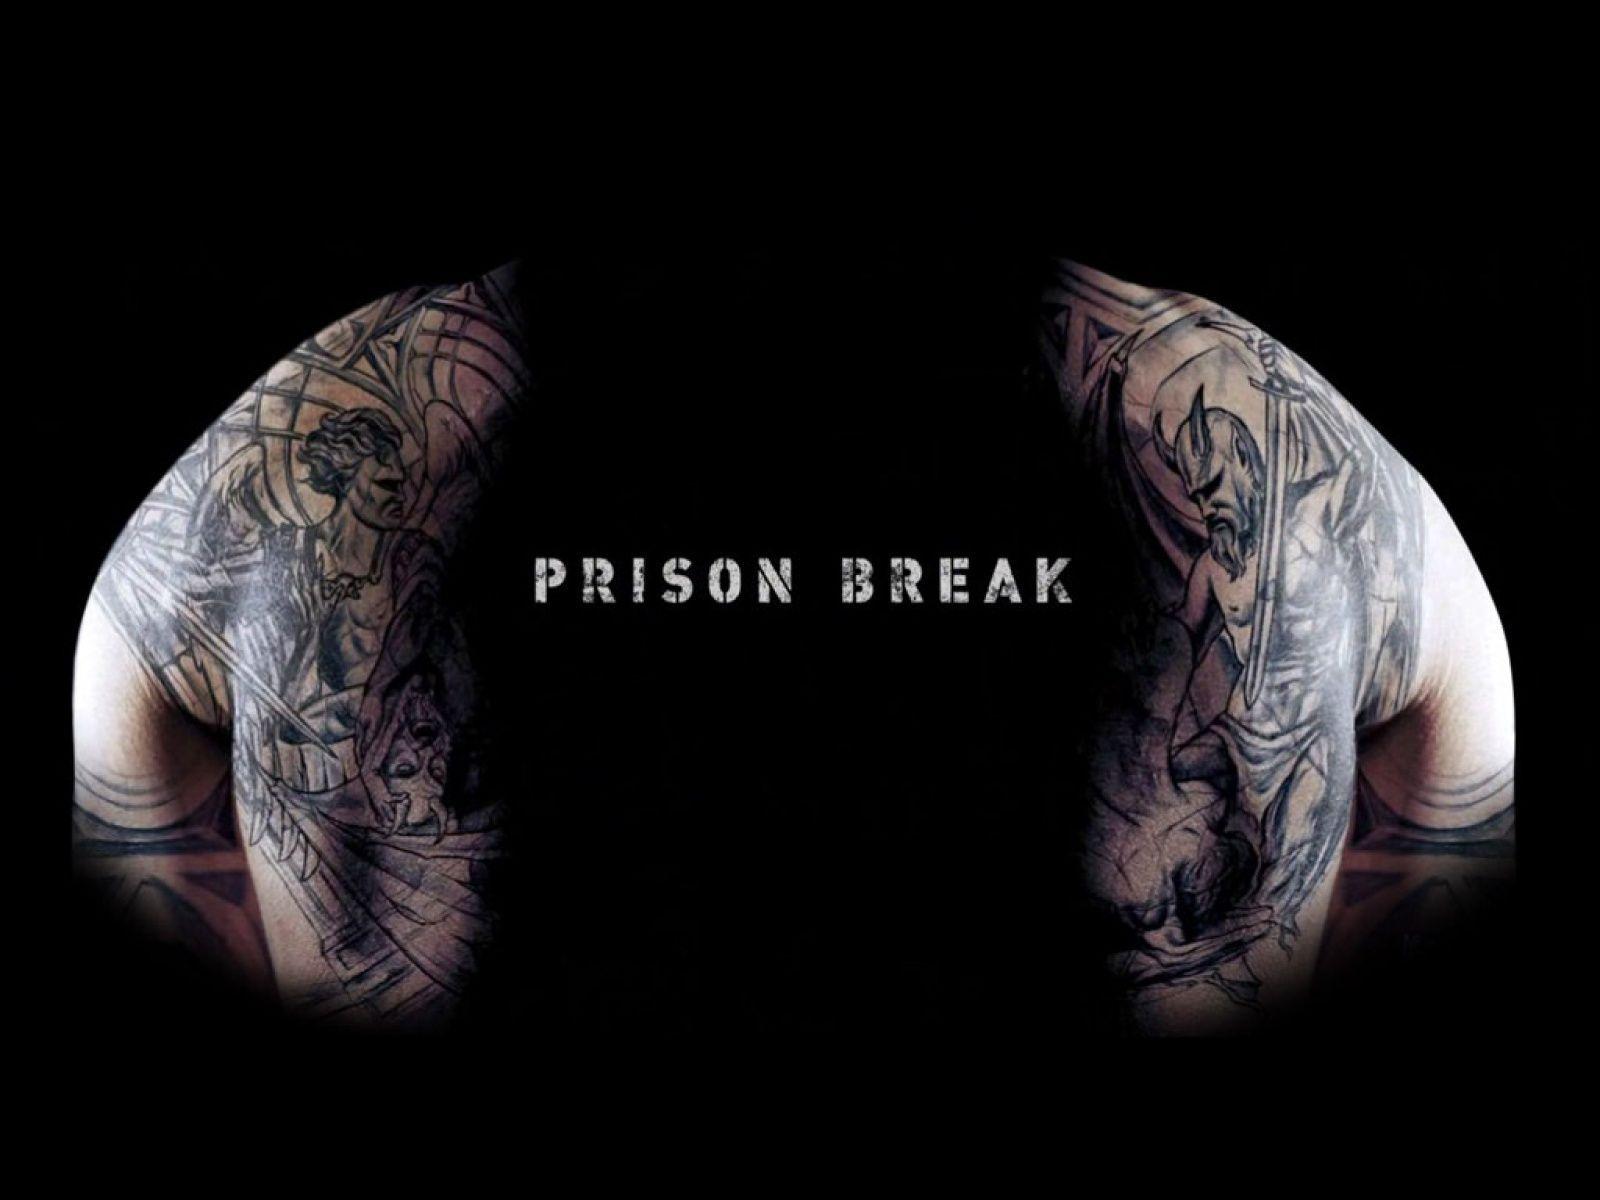 Prison Break Wallpaper. Prison Break HD Wallpaper In 2019